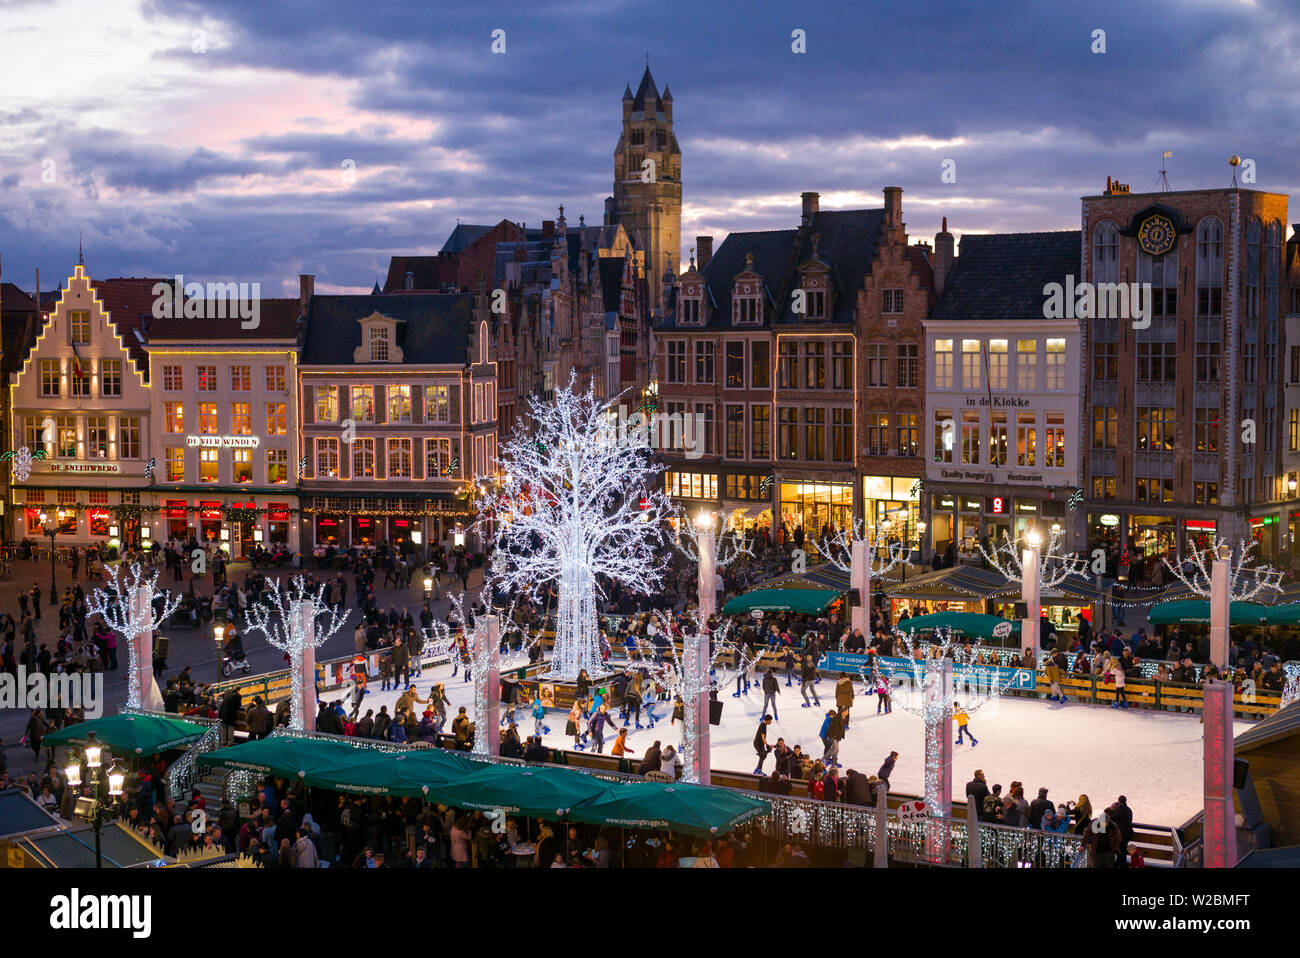 Belgique, Bruges, le Markt, la place principale de bâtiments et d'hiver patinoire, dusk Banque D'Images